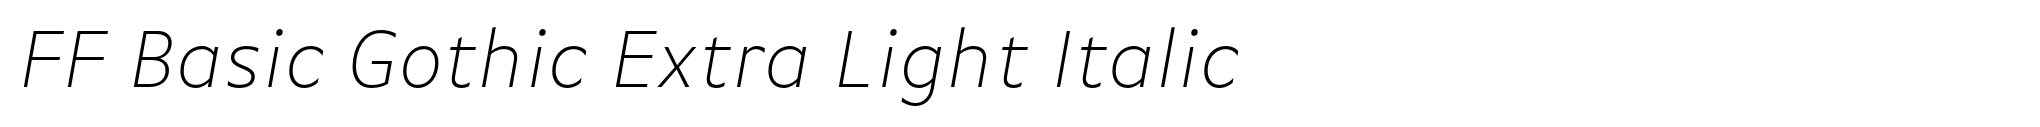 FF Basic Gothic Extra Light Italic image